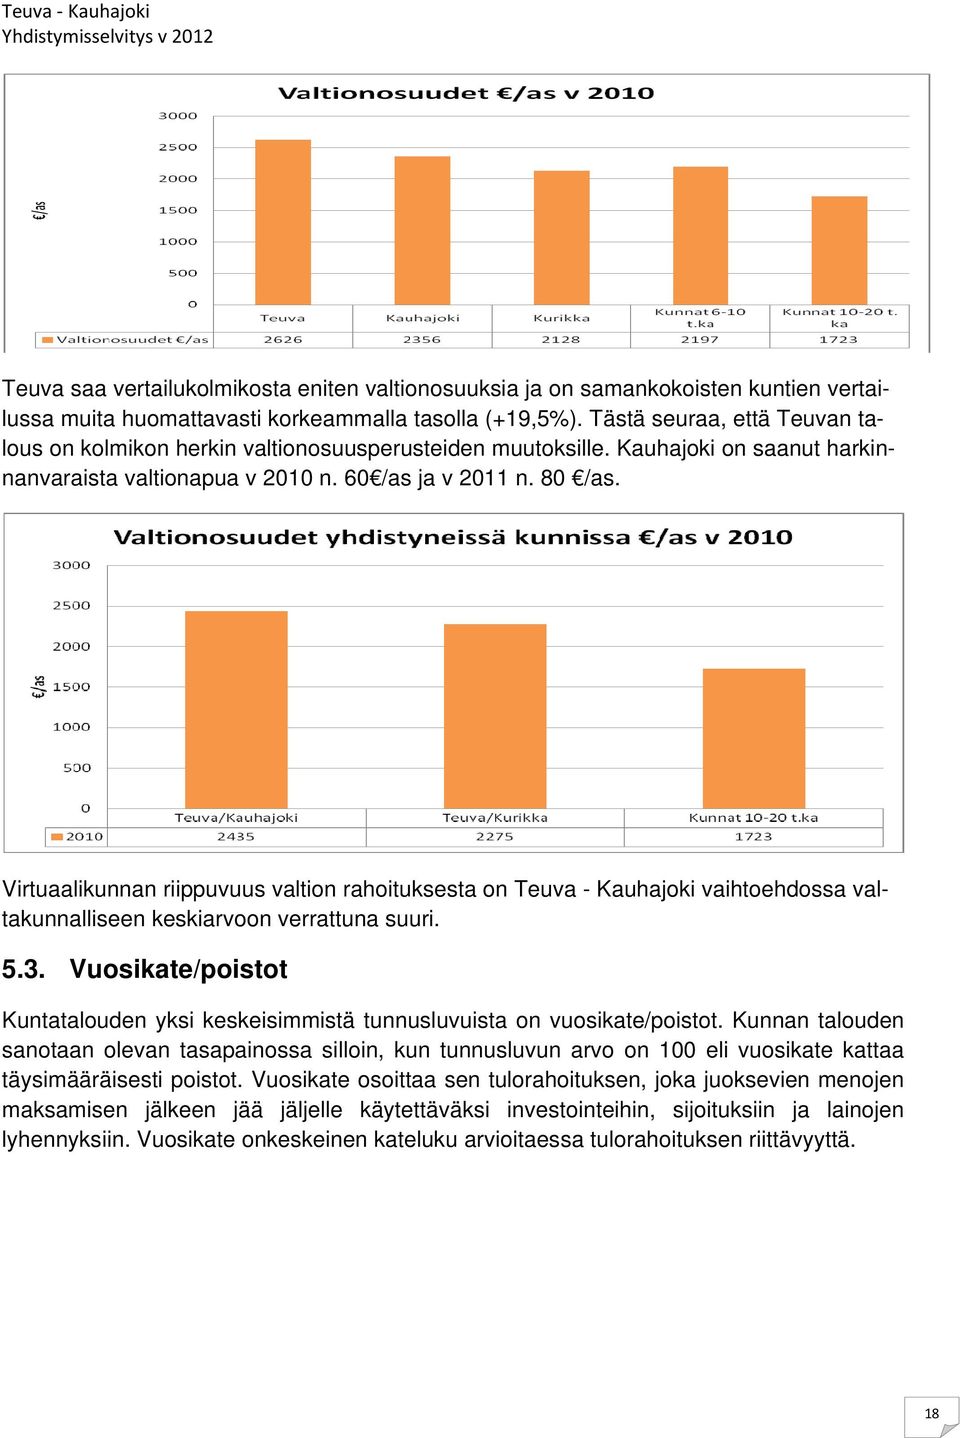 Virtuaalikunnan riippuvuus valtion rahoituksesta on Teuva - Kauhajoki vaihtoehdossa valtakunnalliseen keskiarvoon verrattuna suuri. 5.3.